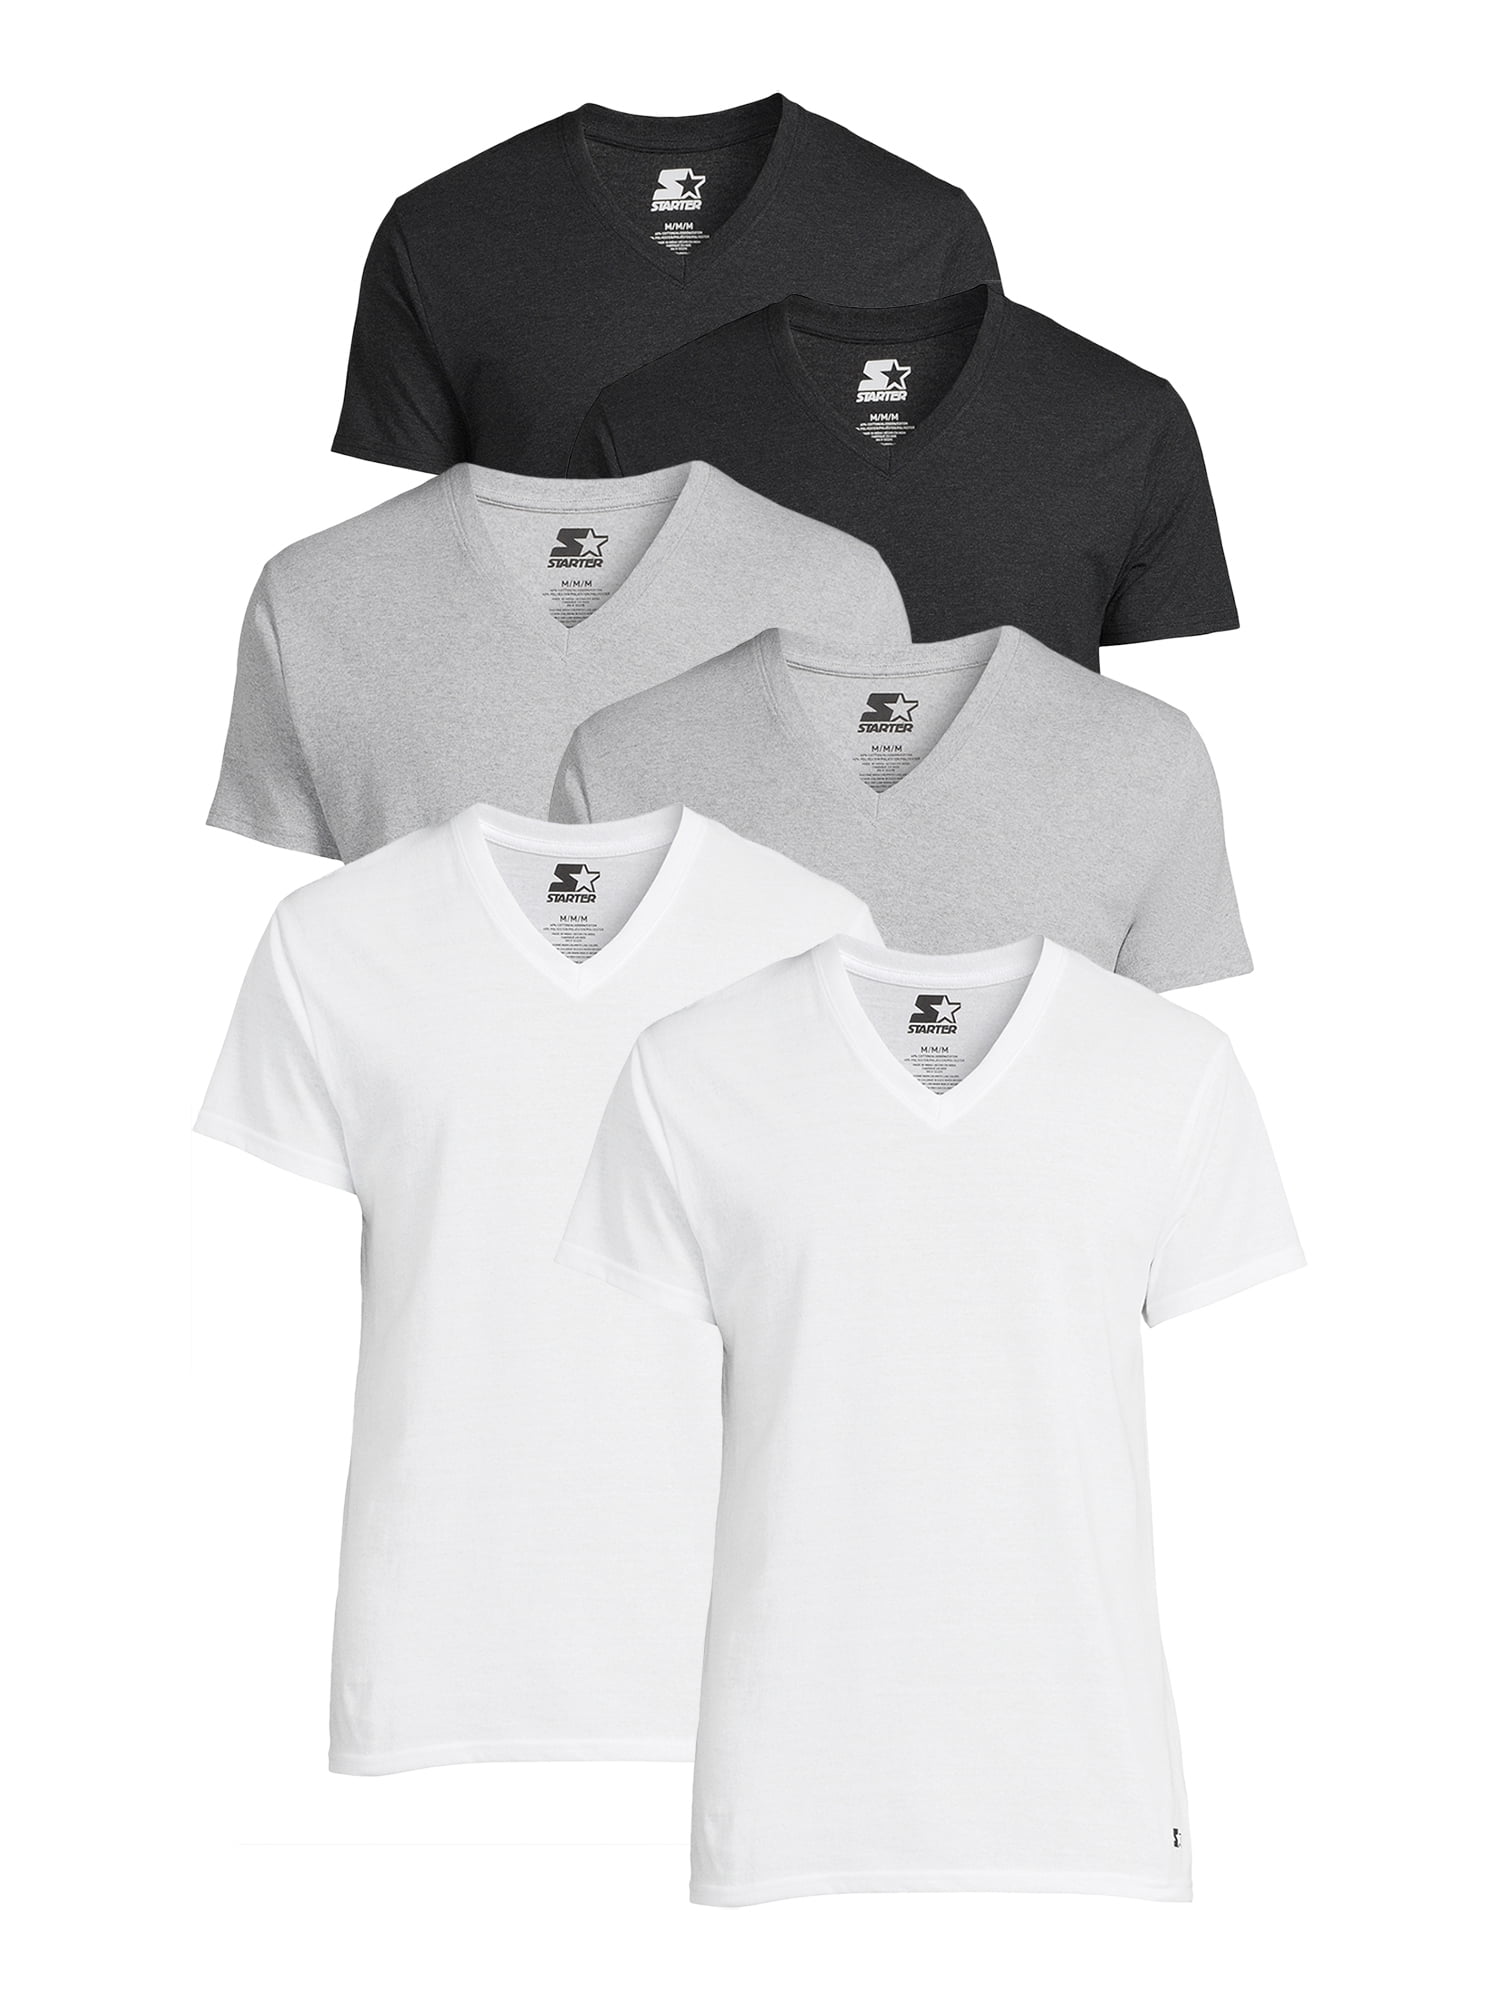 Hanes Men's Value Pack White V-Neck Undershirts, 6 Pack 